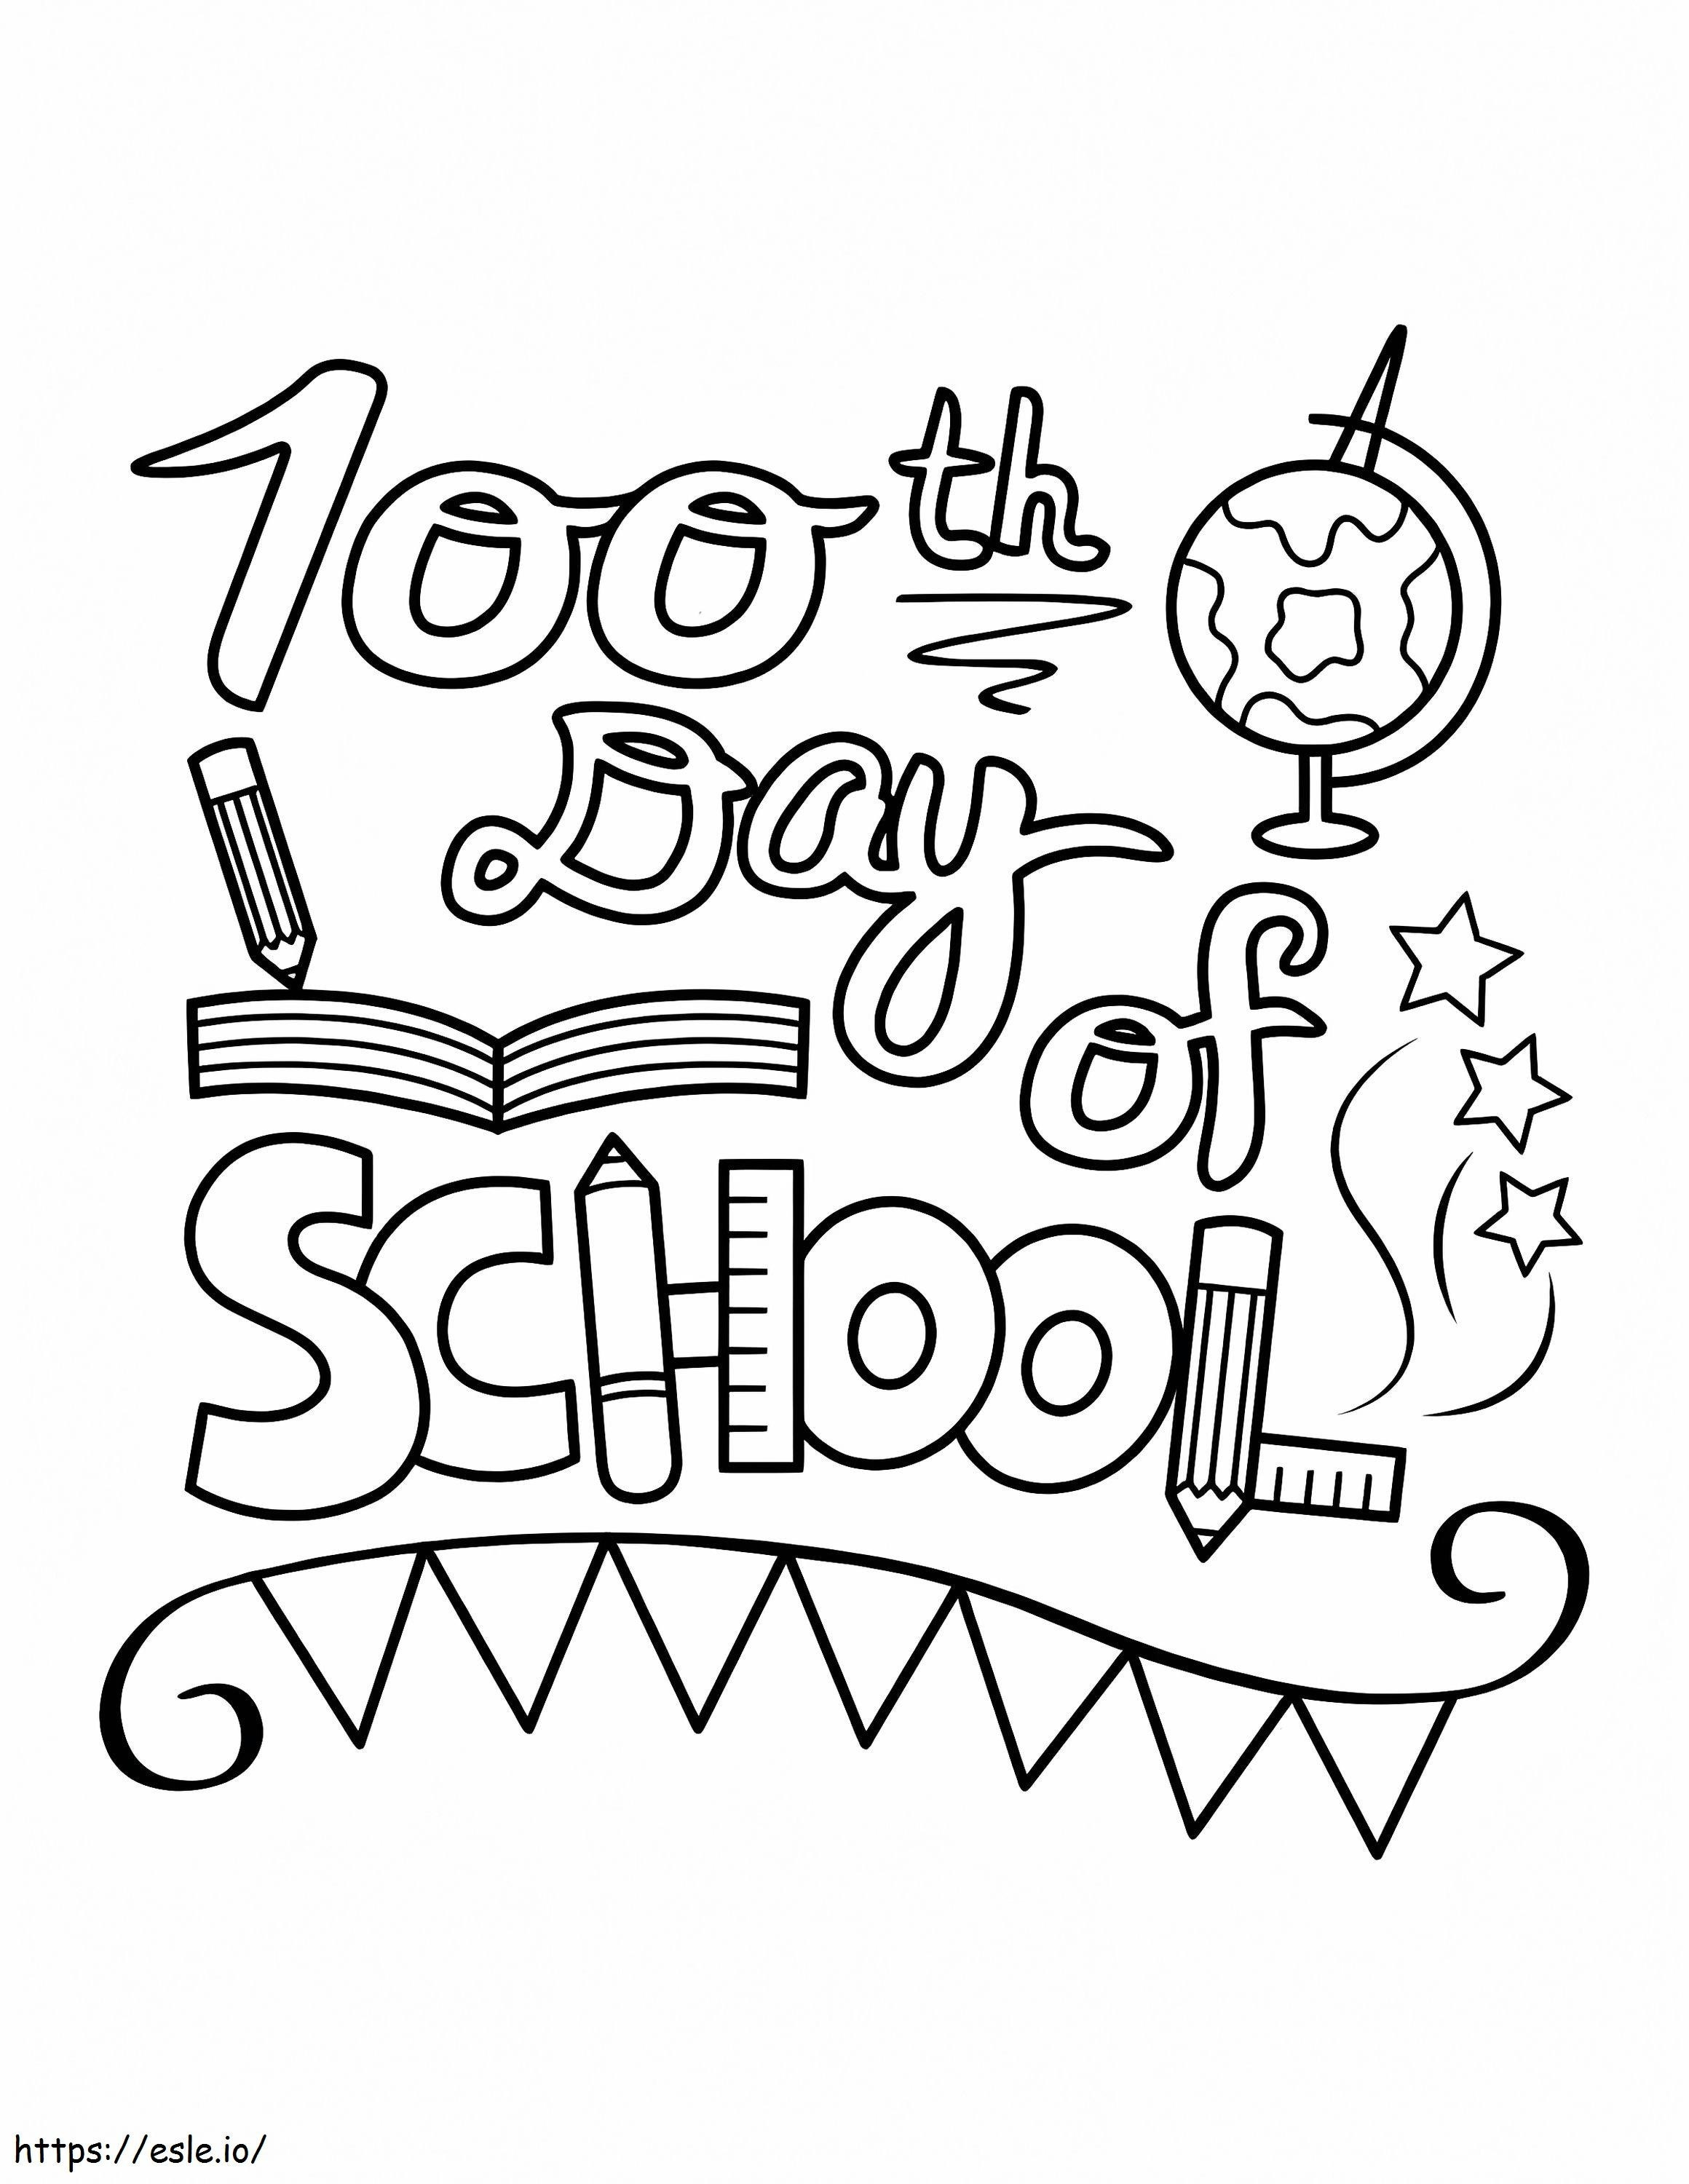 100º dia de aula para imprimir para colorir